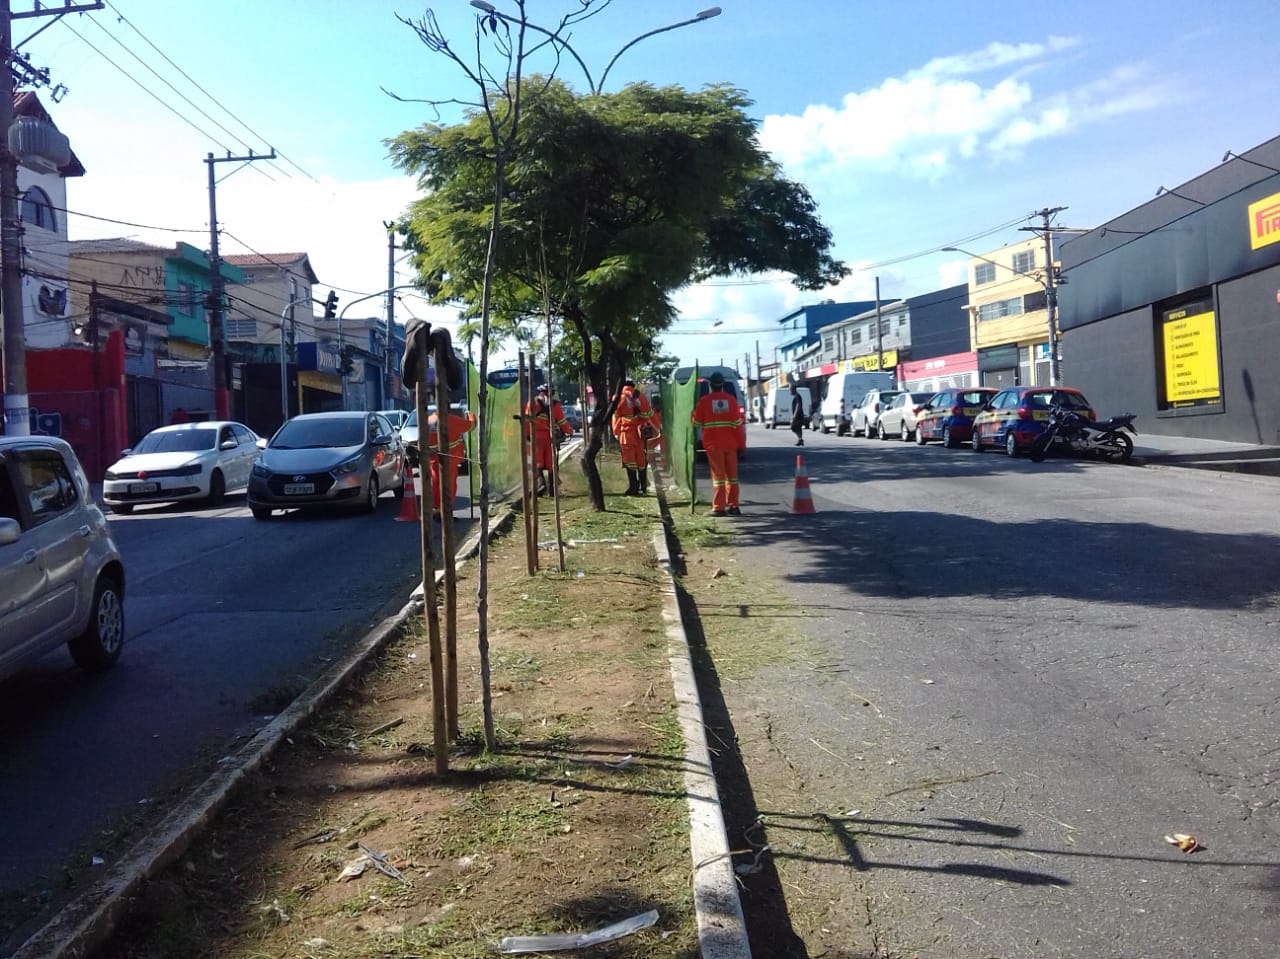 #PraCegoVer - Trabalhadores da Subprefeitura cortam grama no canteiro central da avenida. Outros seguram proteção de tela. Há árvores no canteiro.